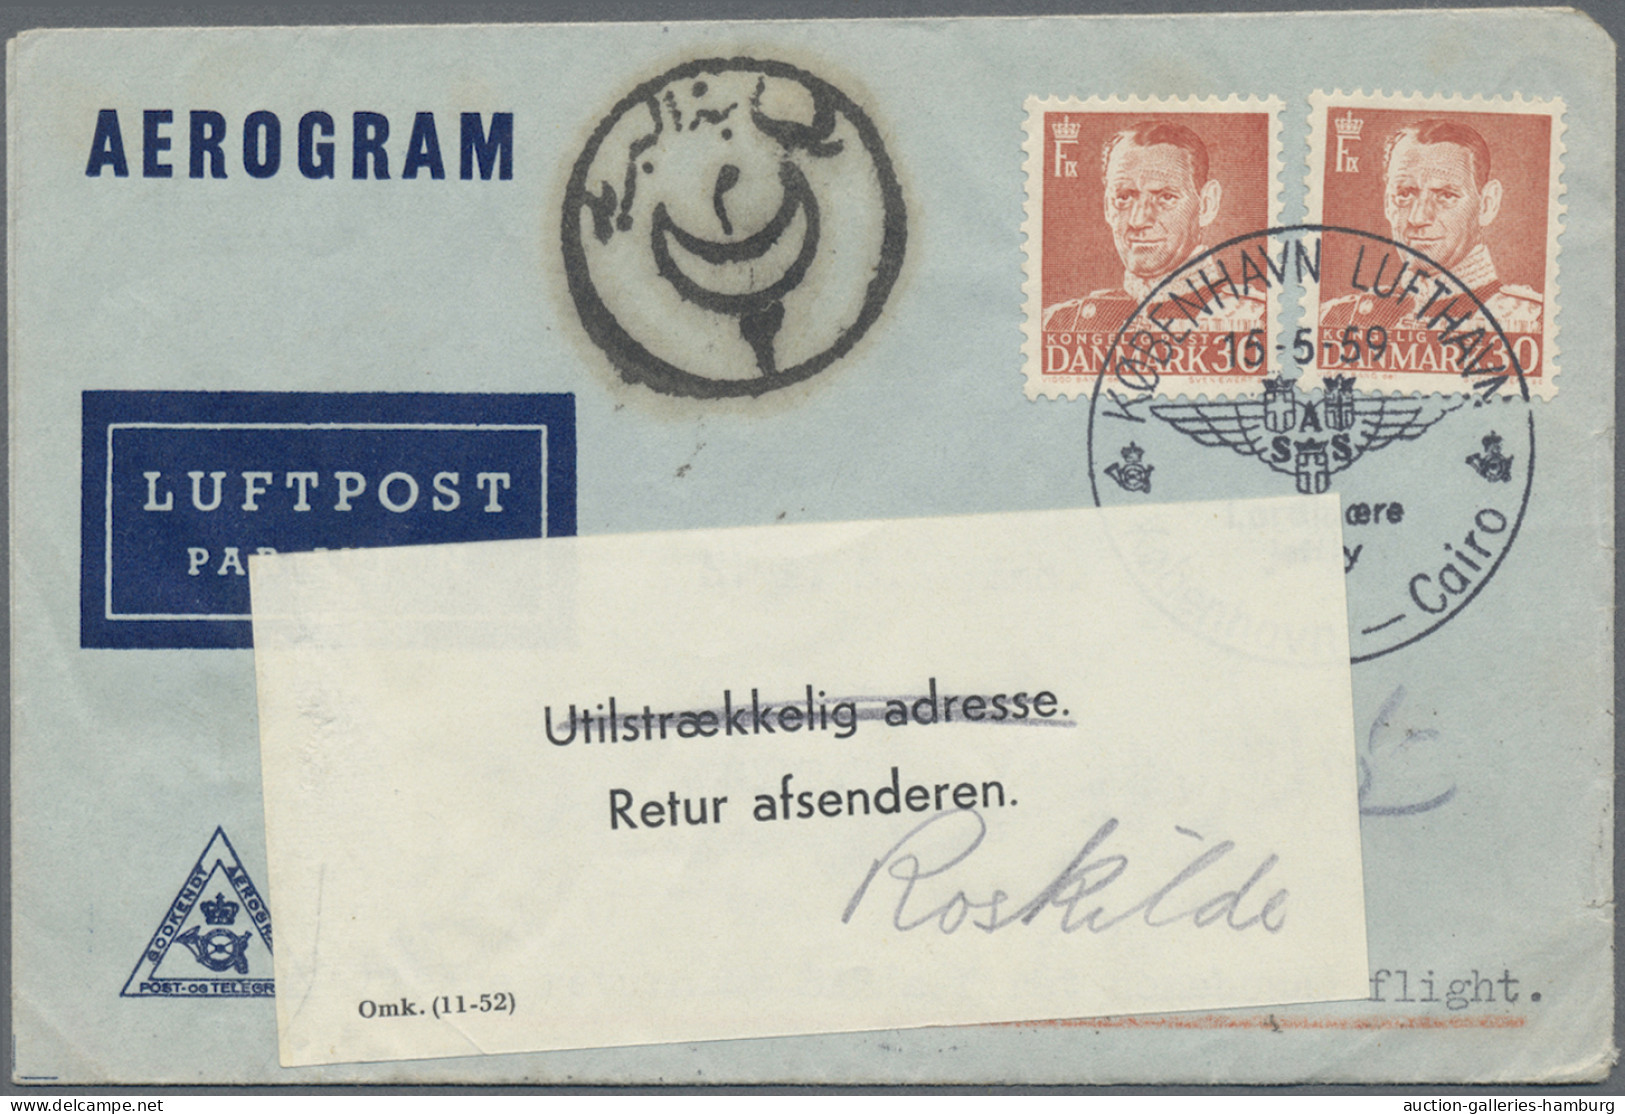 Denmark: 1936-1978, Partie aus rund 140 Luftpostbelegen- bzw. Karten, vor allem